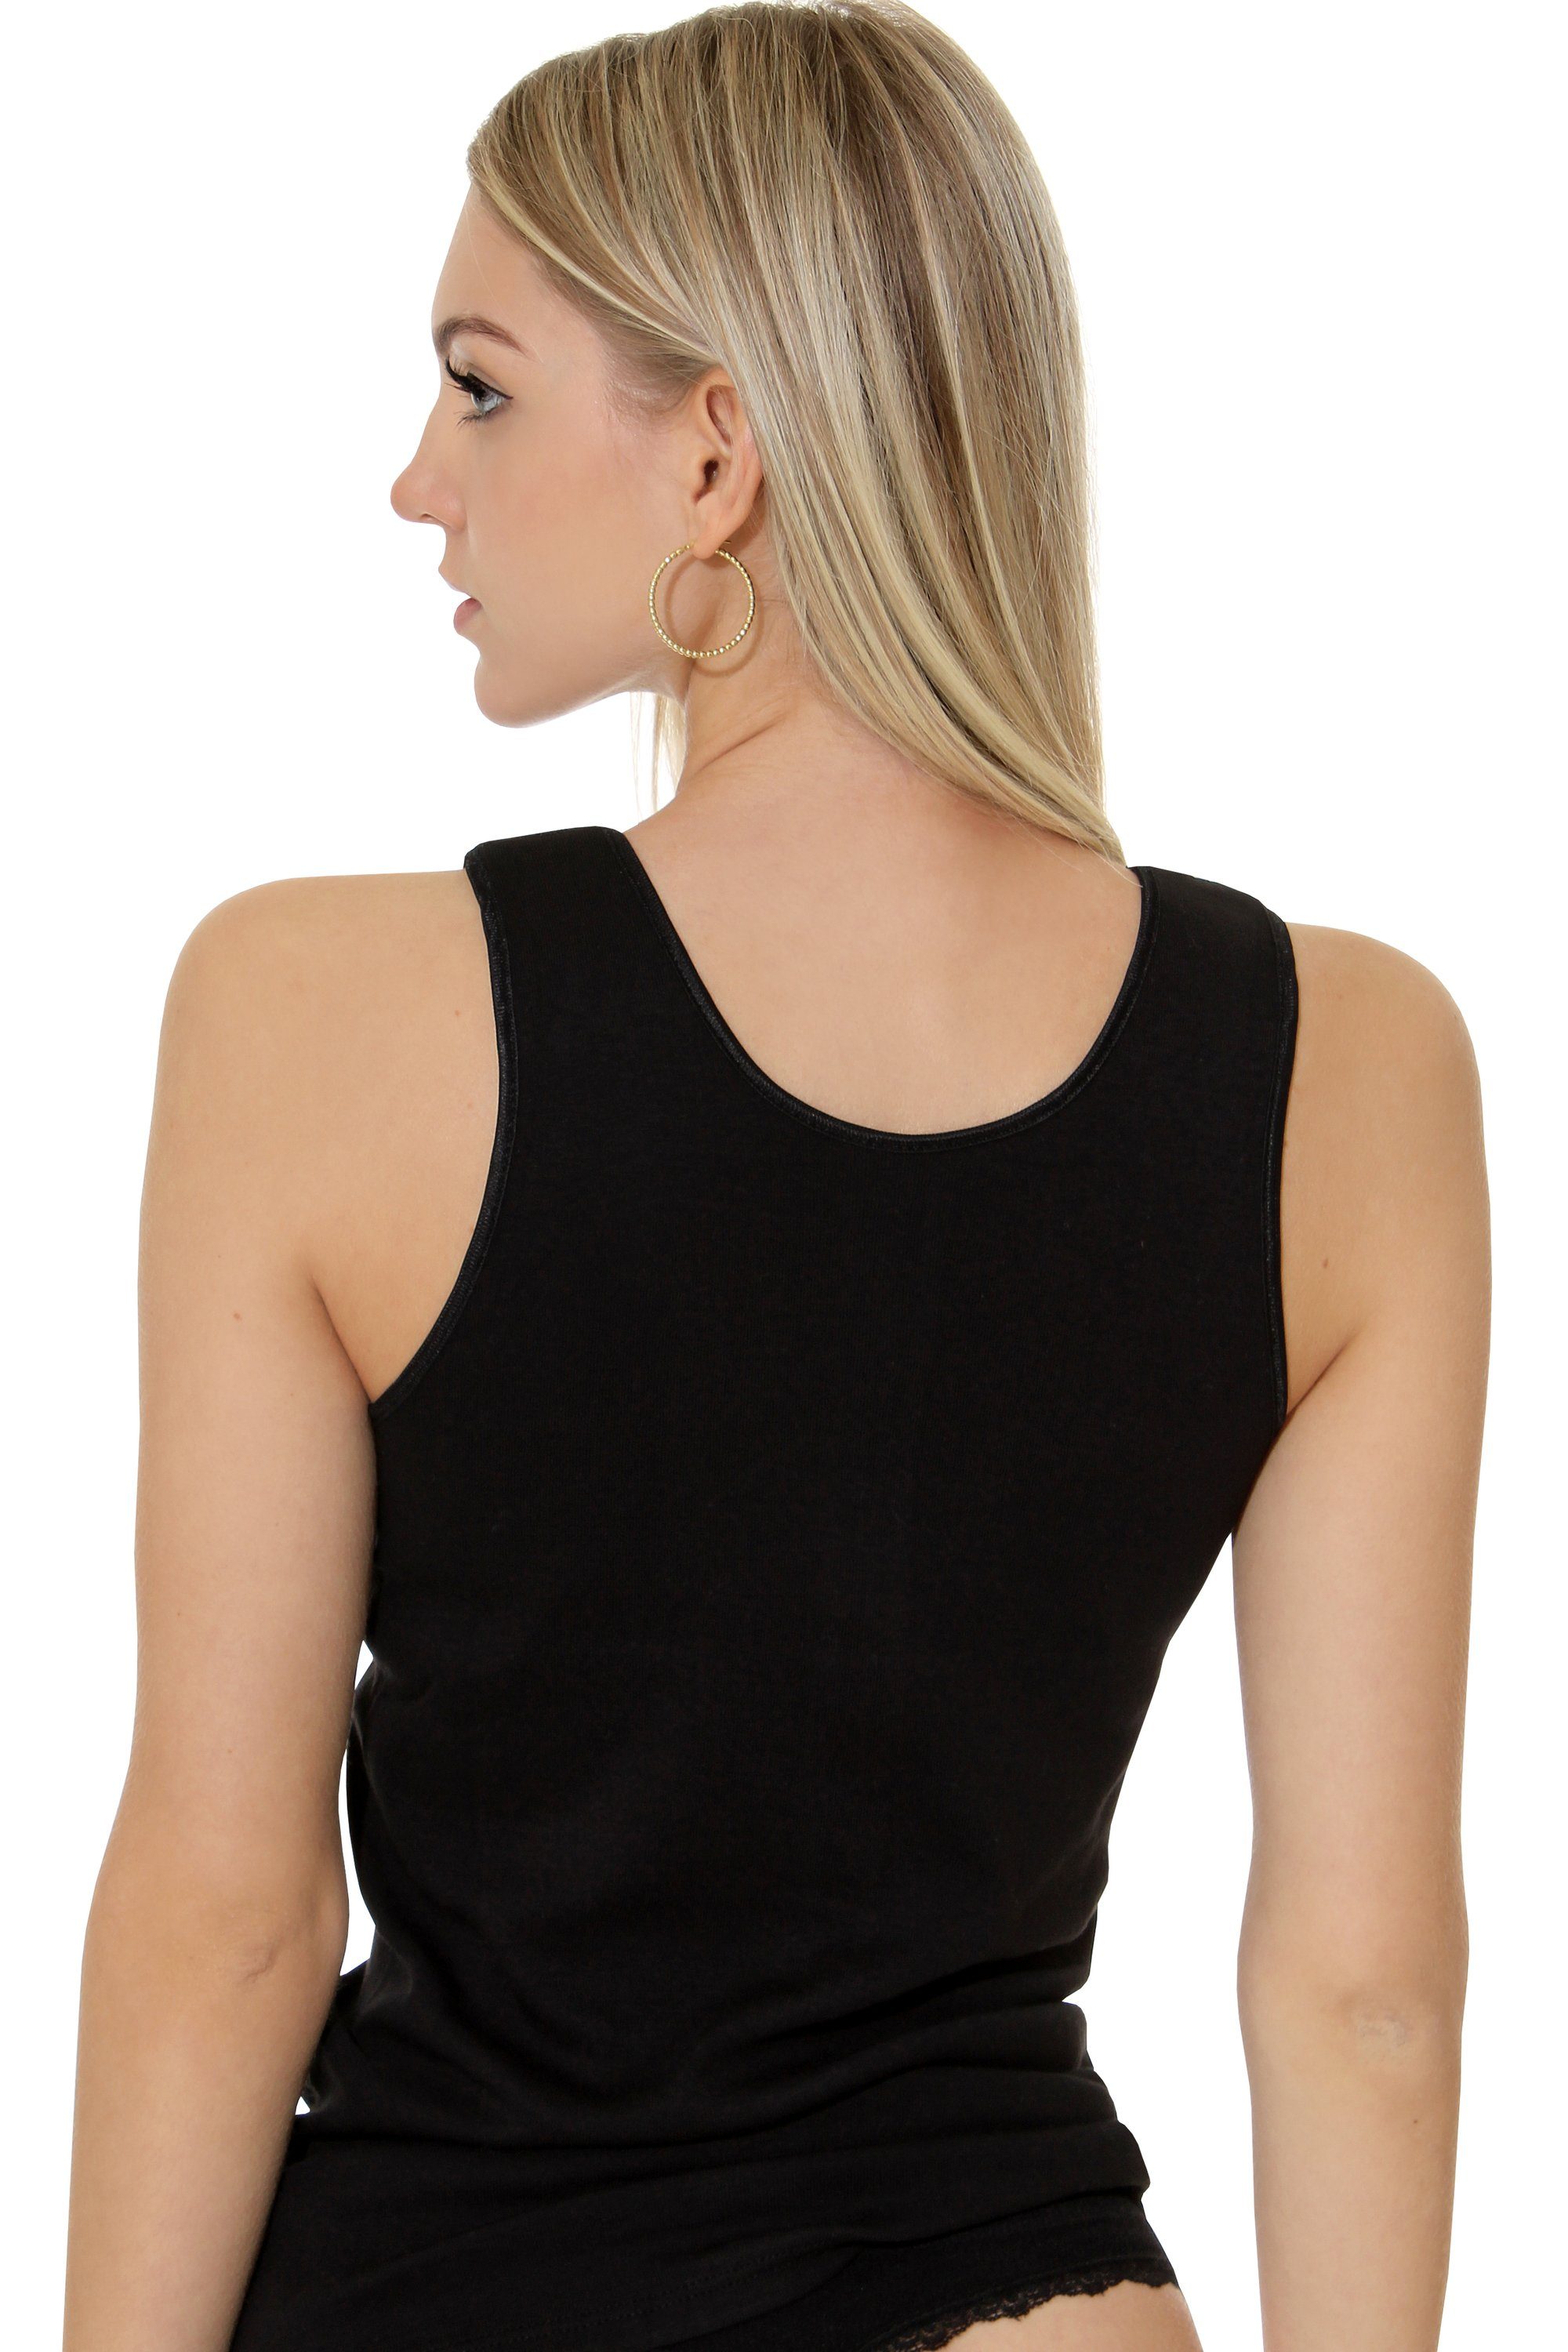 Cotton Prime® Unterhemd mit Spitze Baumwollqualität schwarz angenehmer in